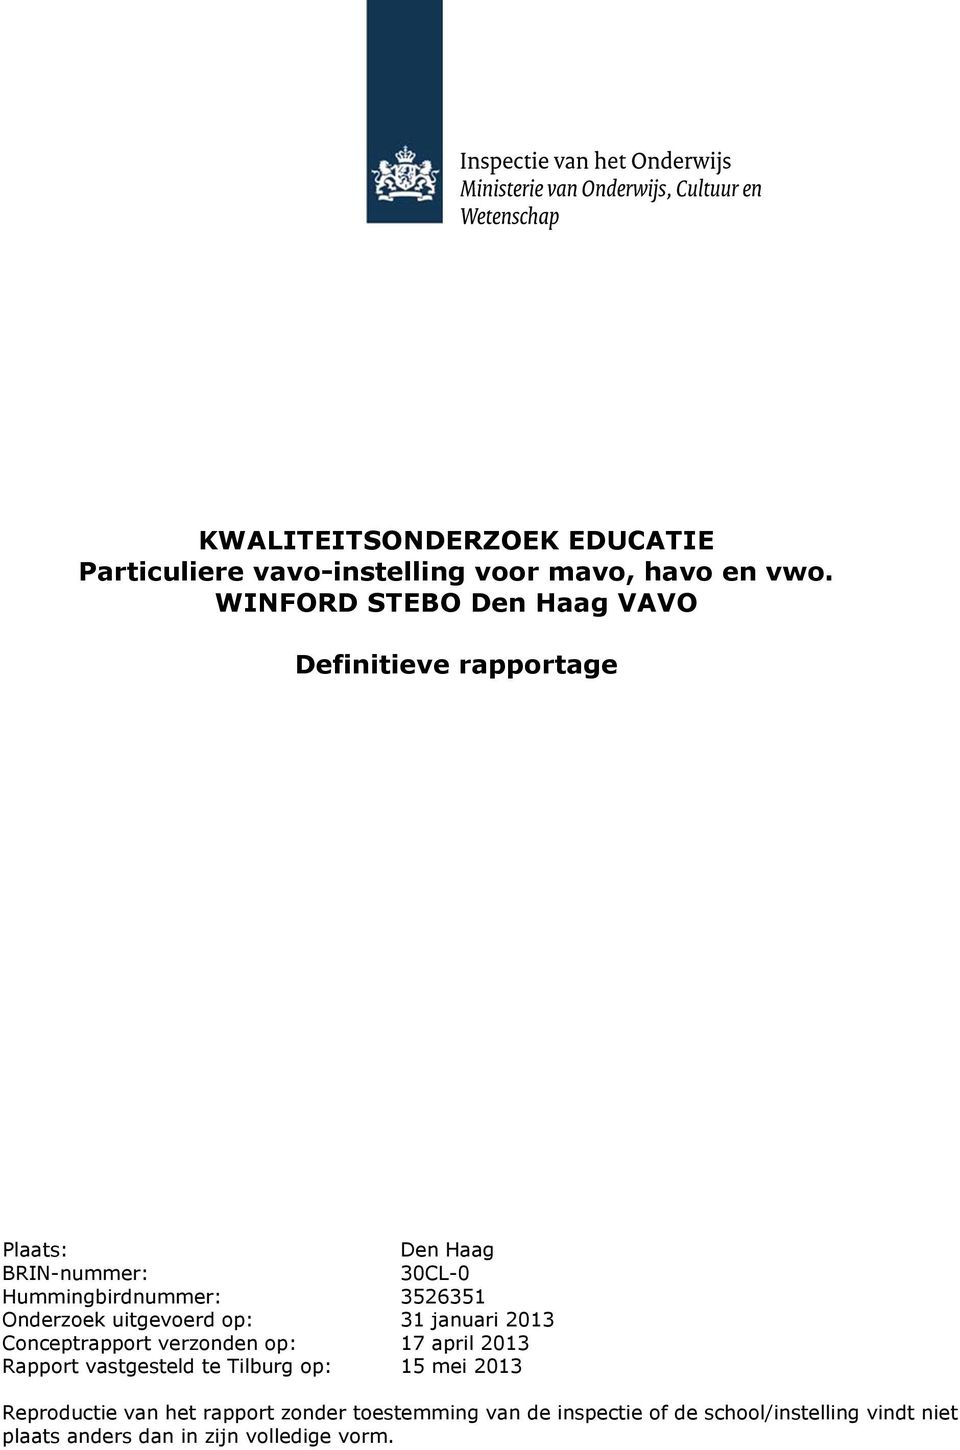 Onderzoek uitgevoerd op: 31 januari 2013 Conceptrapport verzonden op: 17 april 2013 Rapport vastgesteld te Tilburg